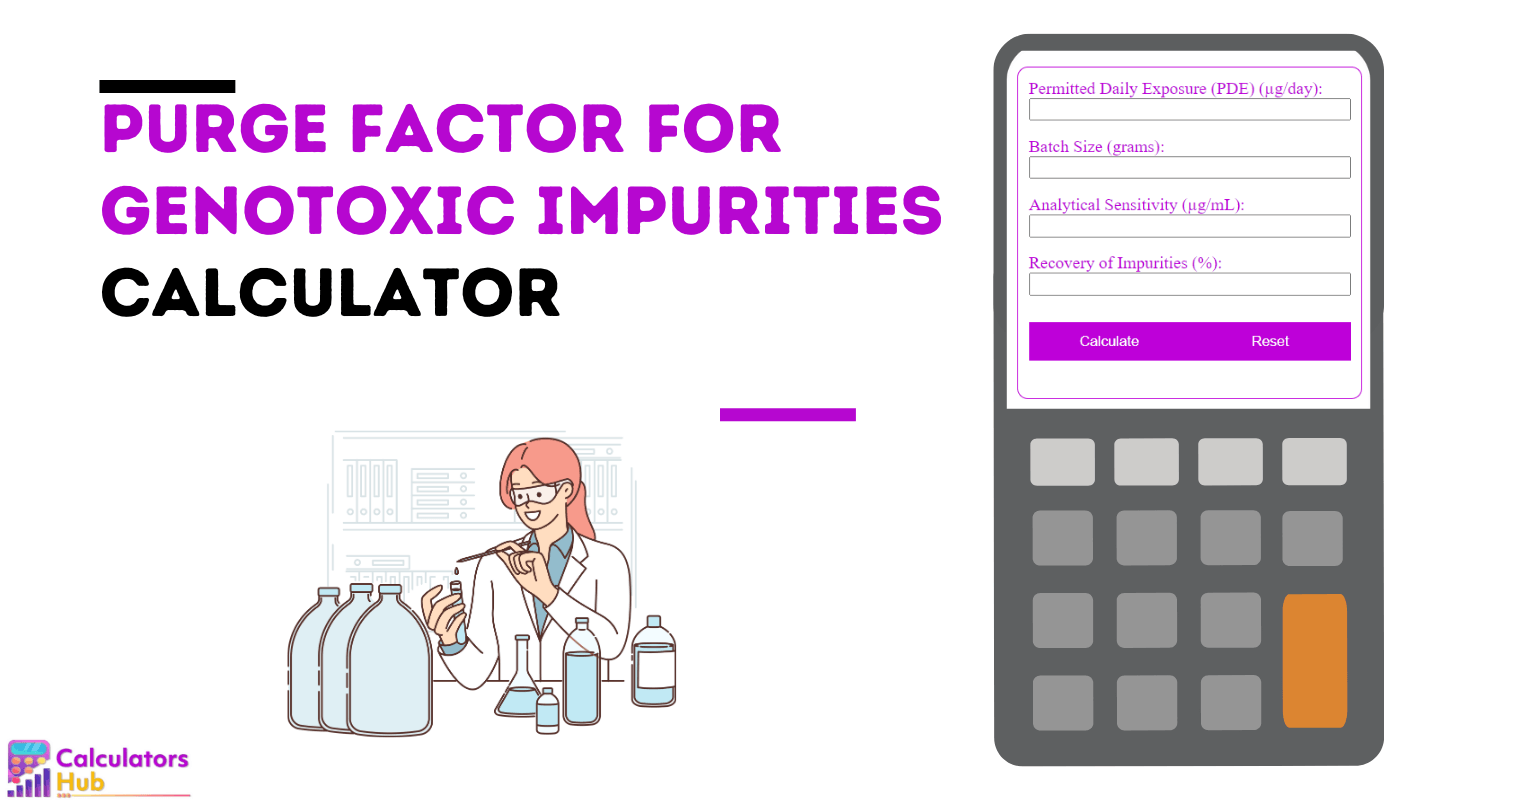 Purge Factor Calculator for Genotoxic Impurities